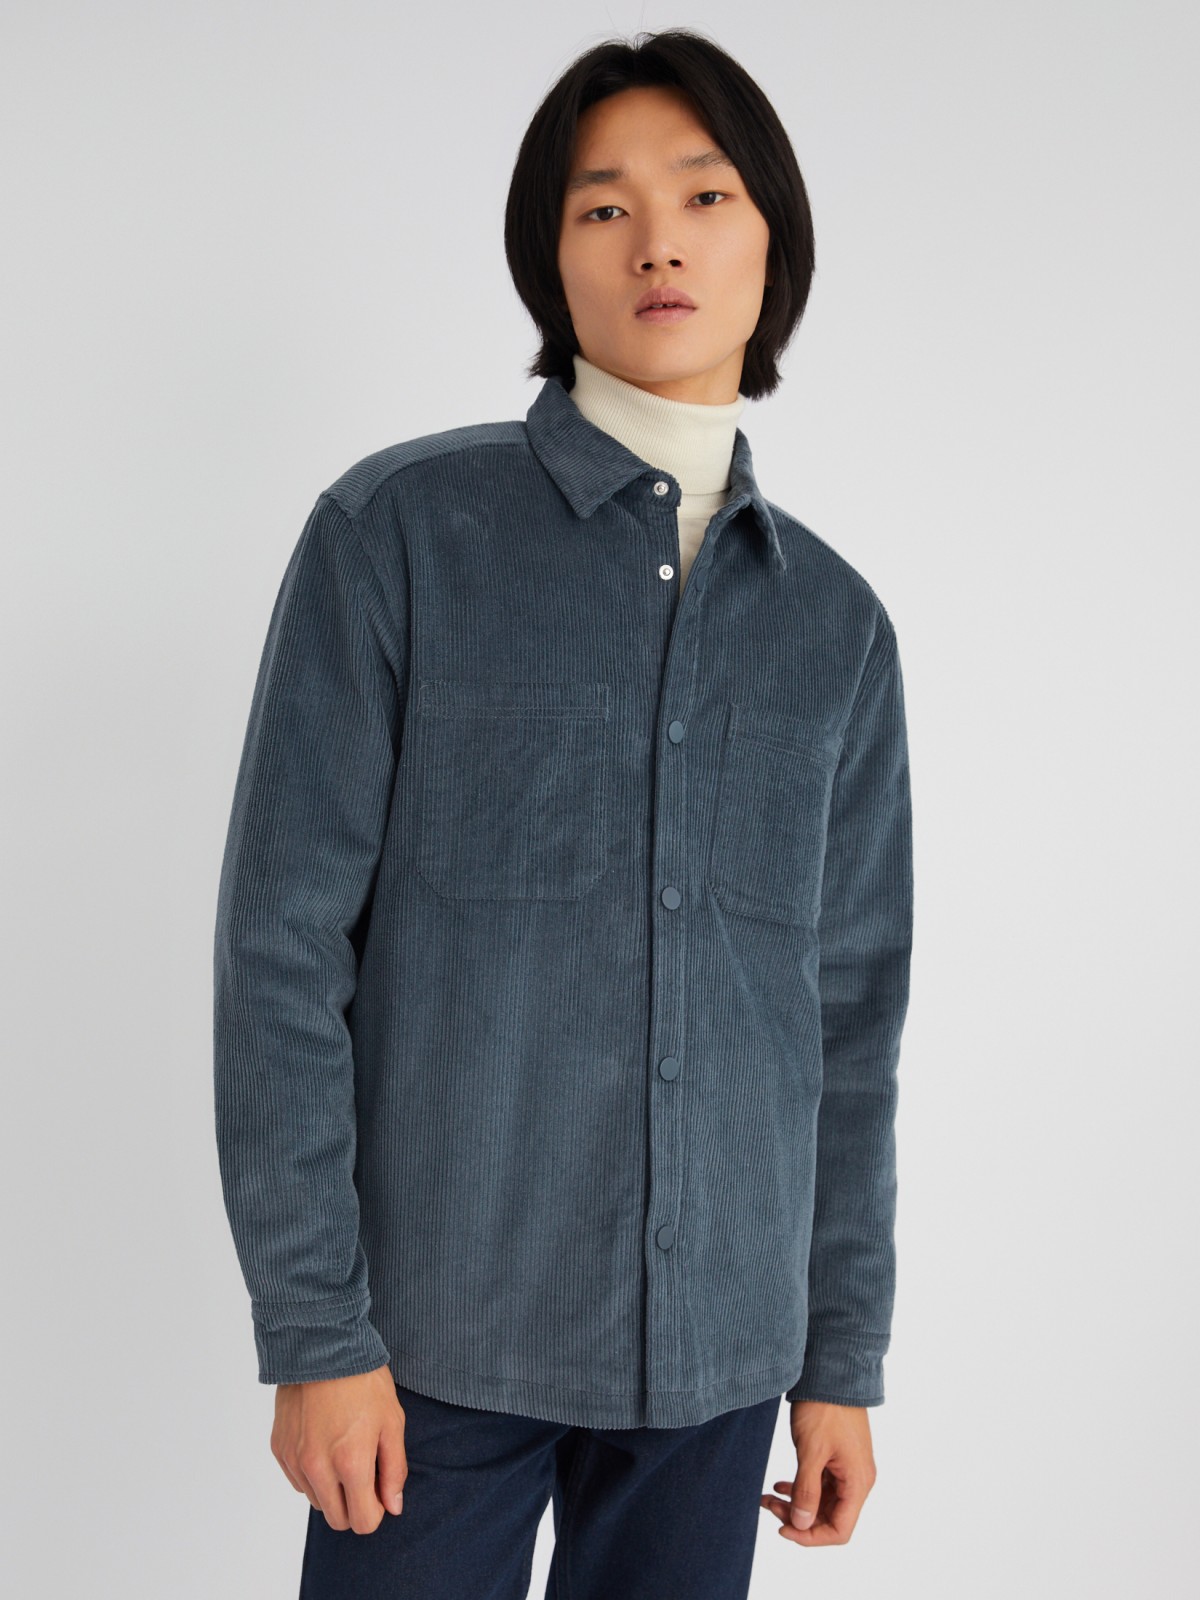 Утеплённая вельветовая куртка-рубашка на синтепоне zolla 013325159134, цвет синий, размер M - фото 3